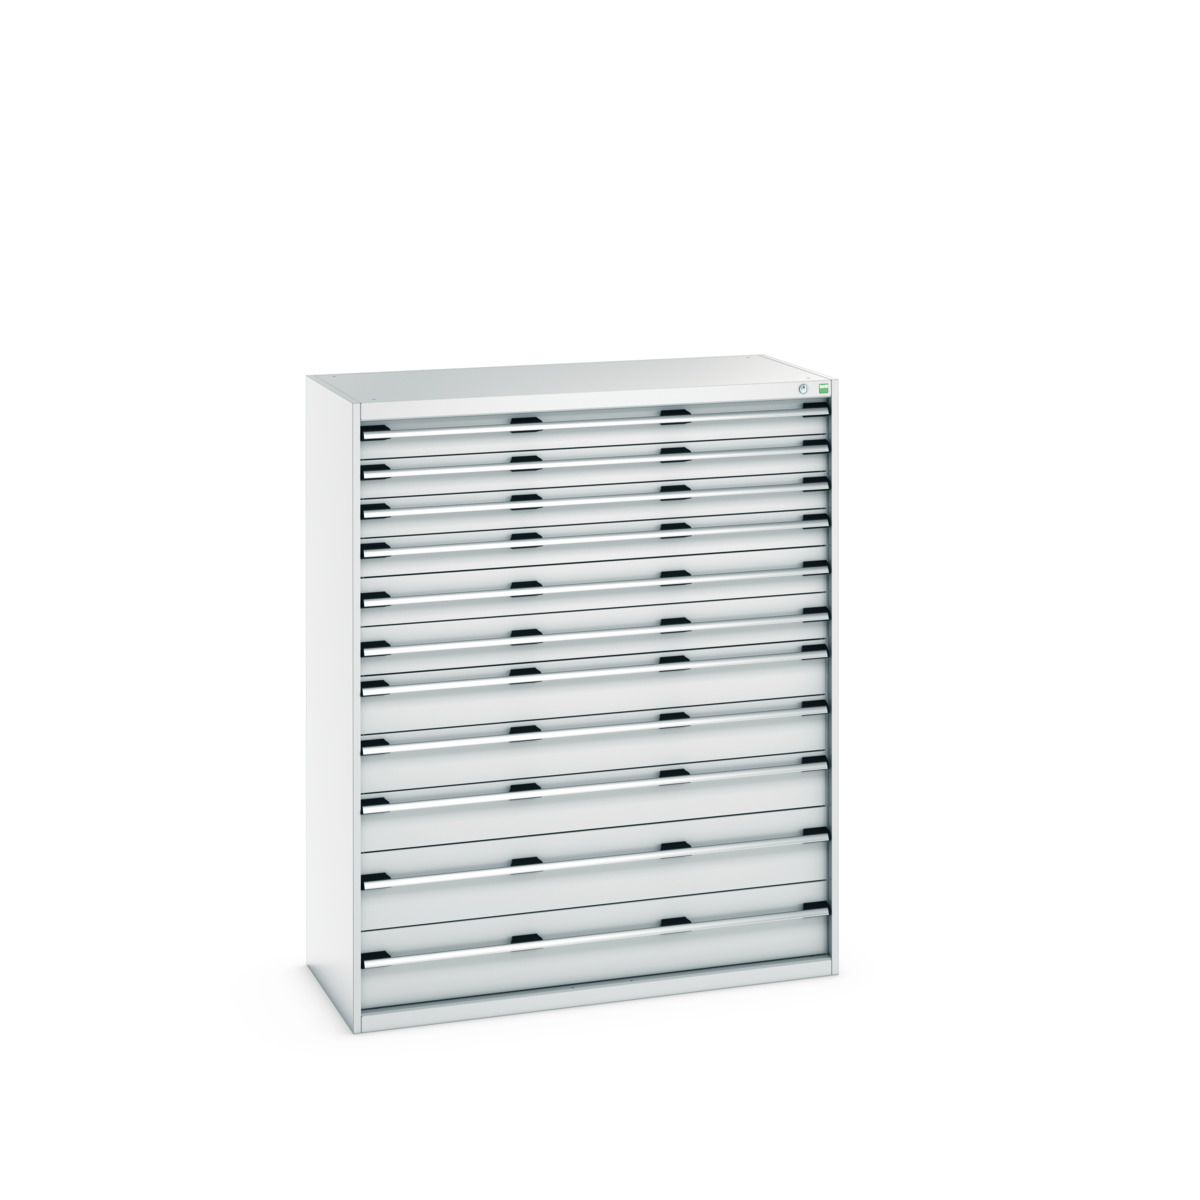 40022136.16V - cubio drawer cabinet